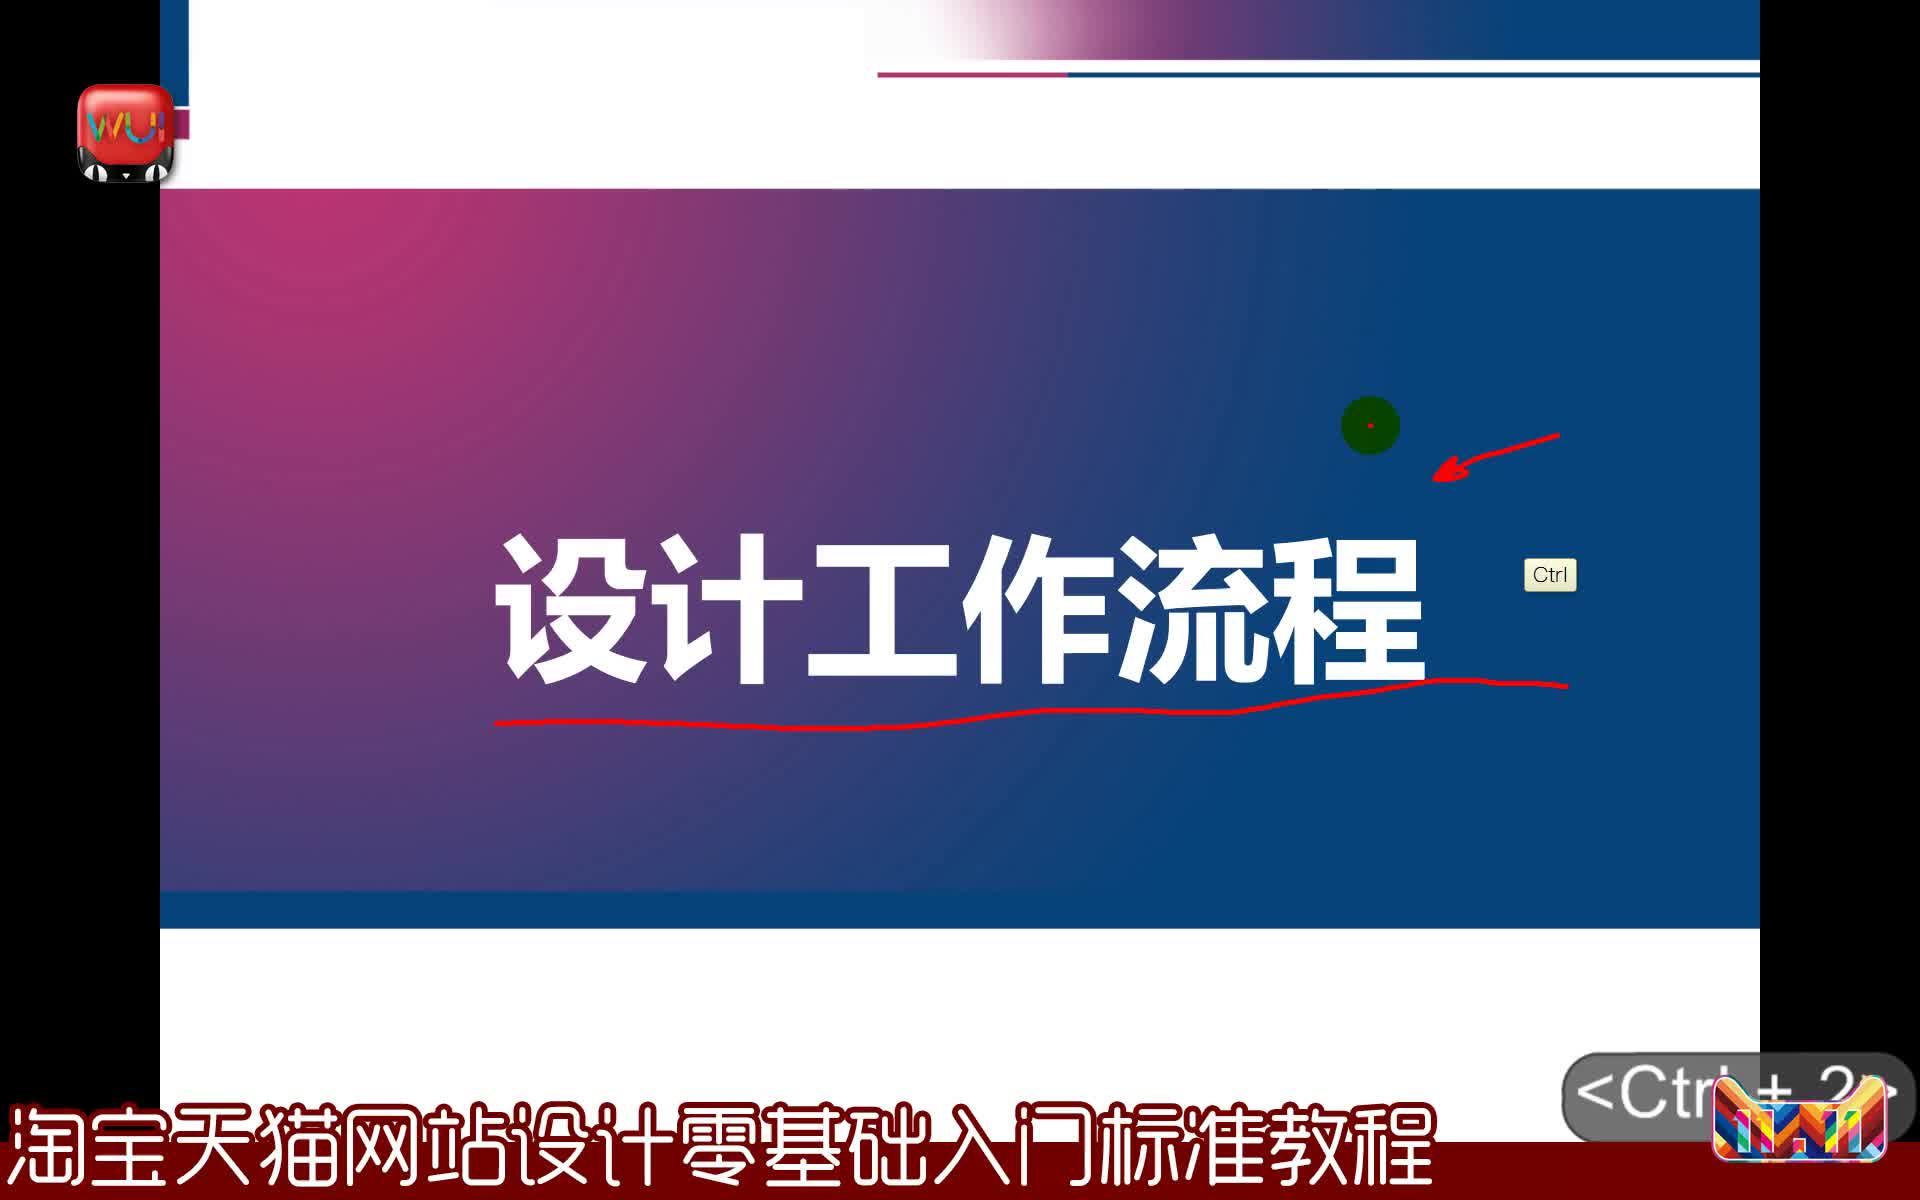 【吴刚】淘宝天猫网站设计初级入门标准视频教程